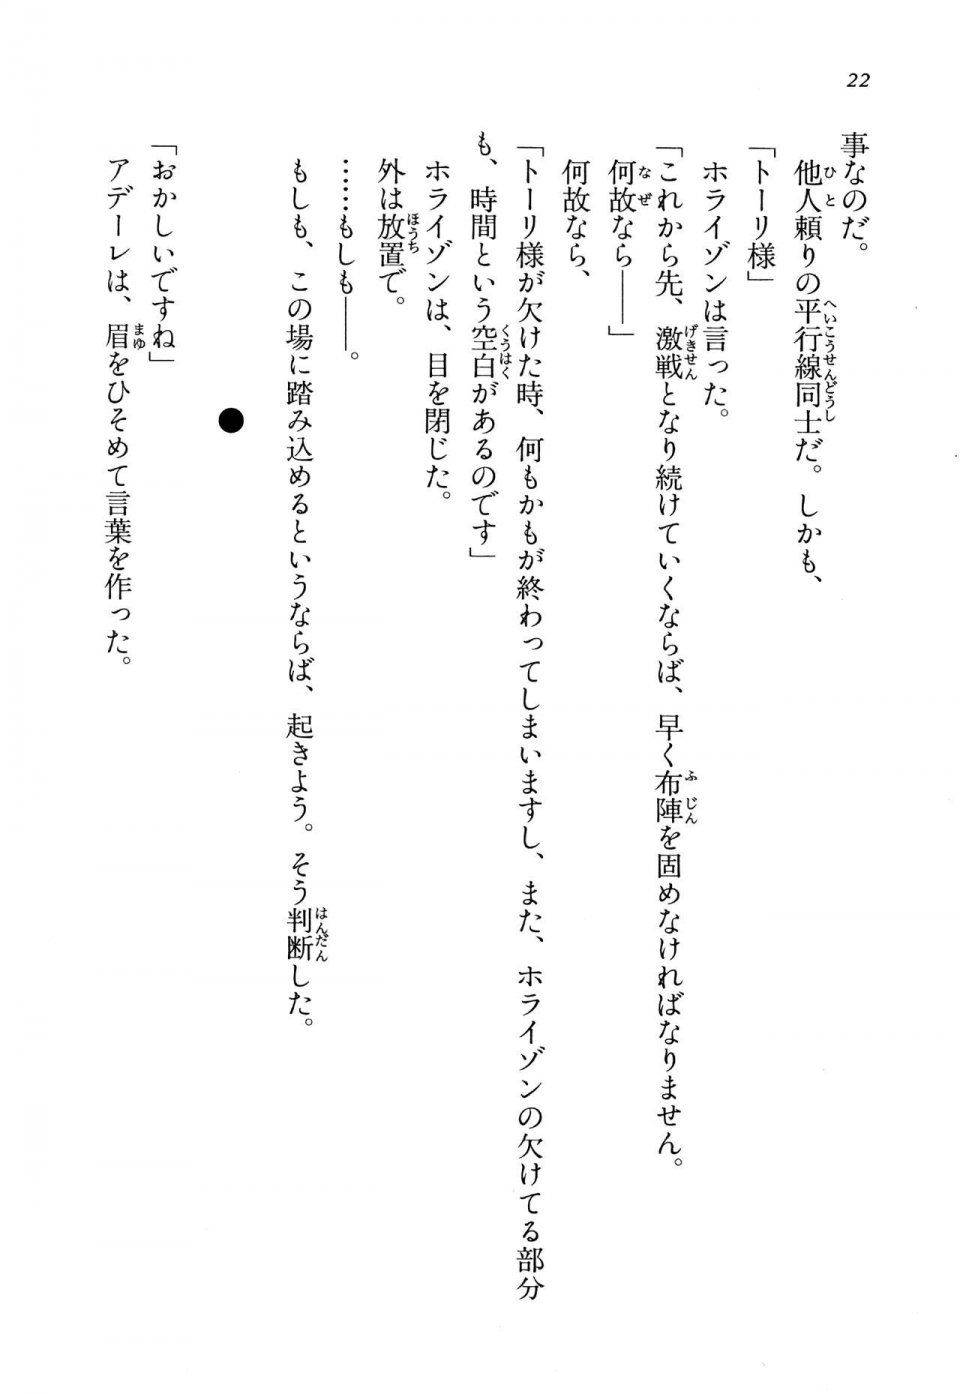 Kyoukai Senjou no Horizon LN Vol 13(6A) - Photo #22